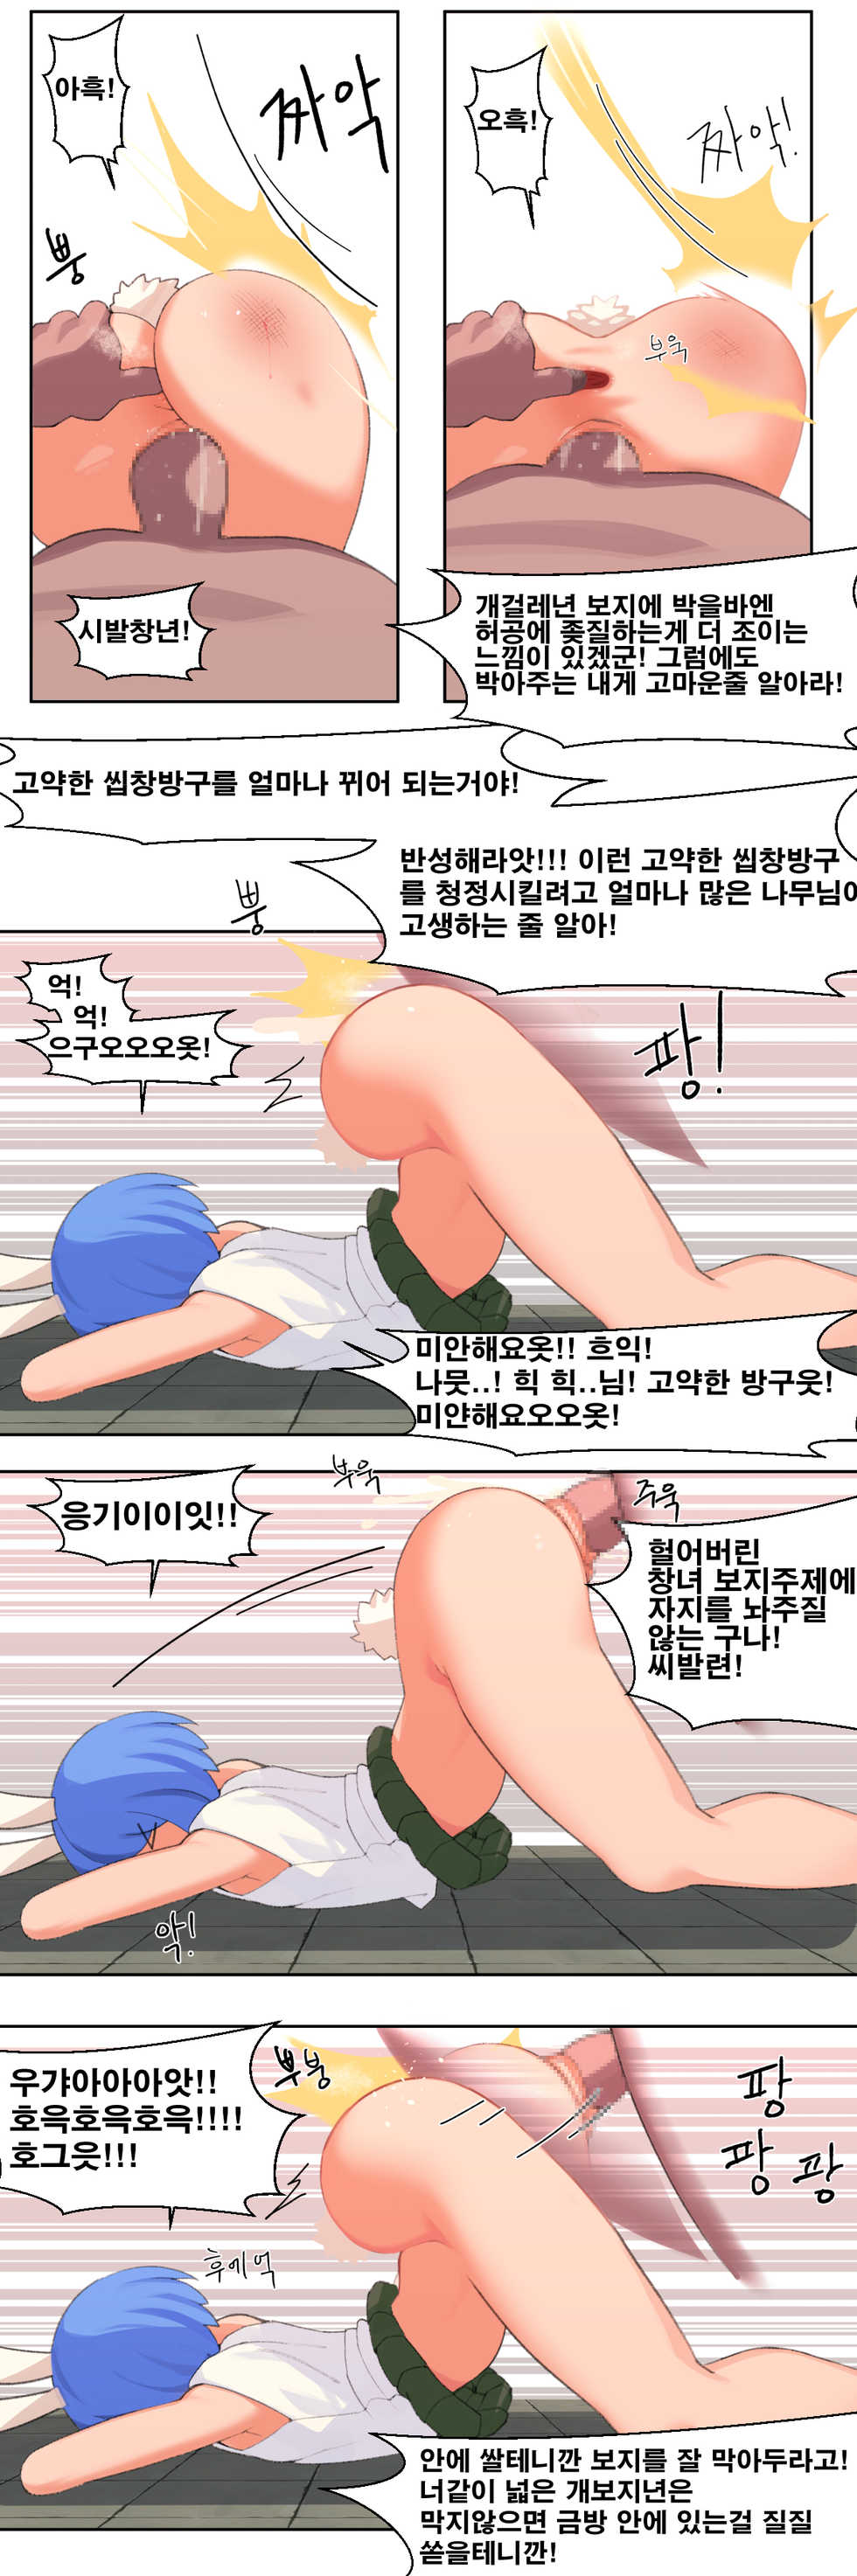 [8] ㄴㅅㅁ [Korean] - Page 7